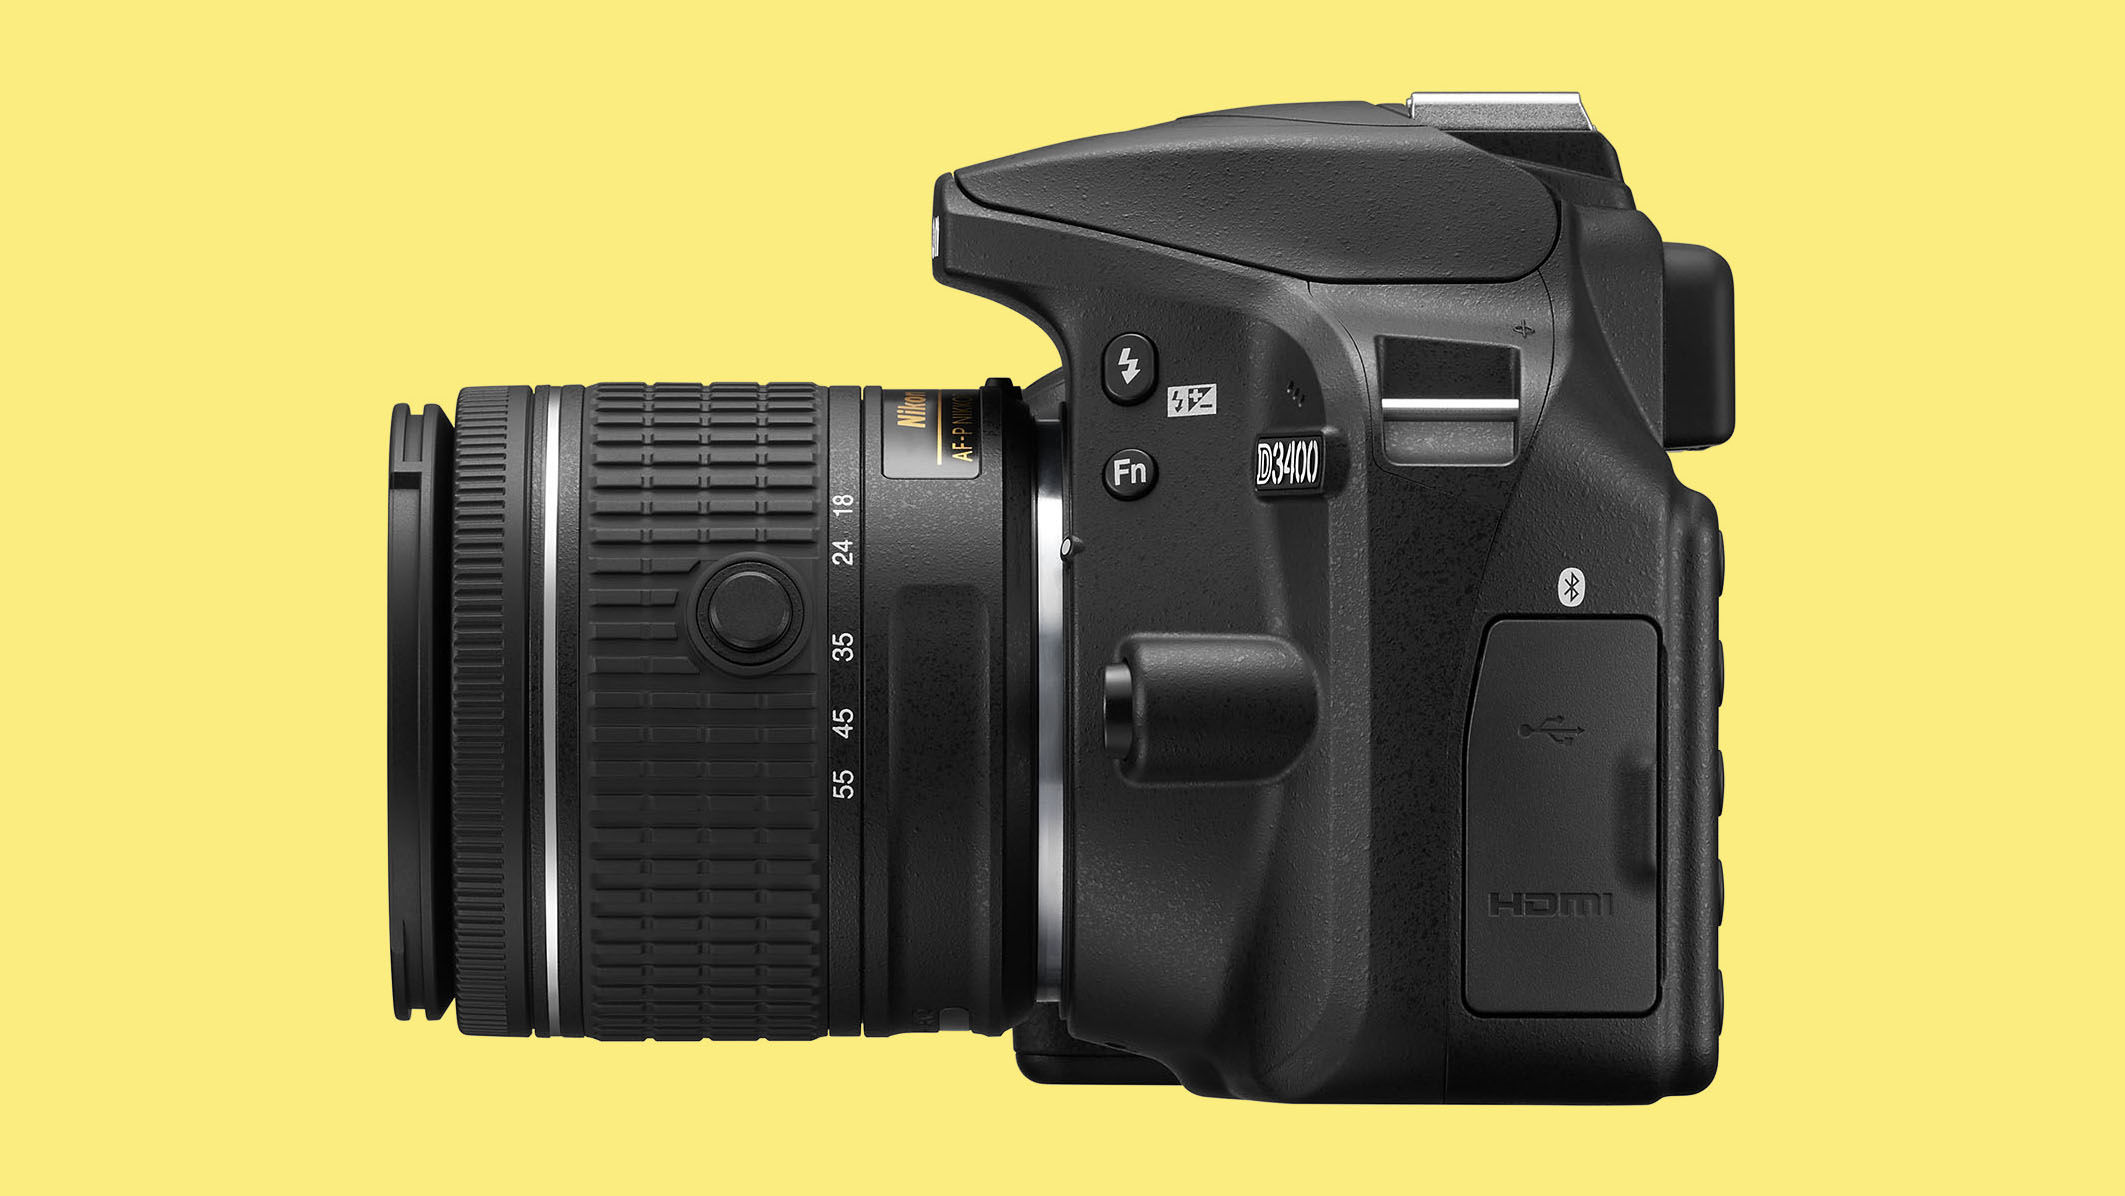 Nikon D3400 side